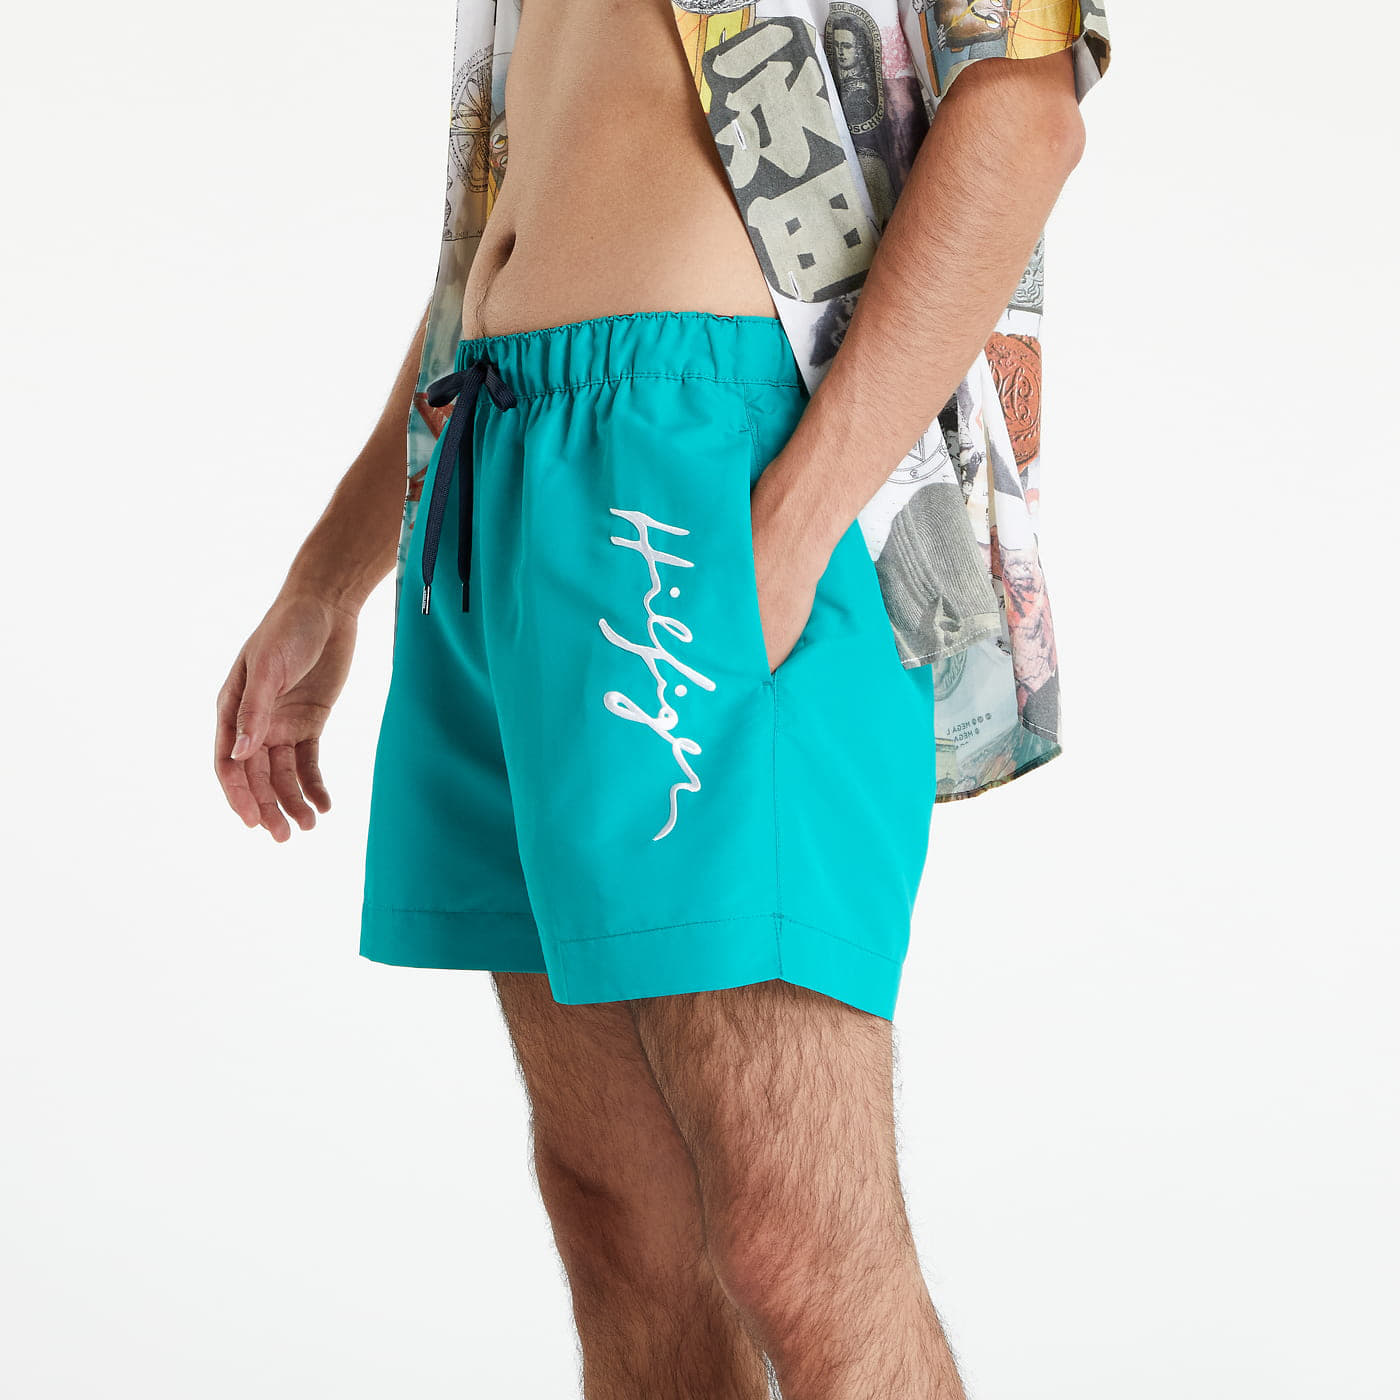 Hilfiger Logo Turquoise Shorts | Swimsuit Medium Drawstring Tommy Footshop Swim